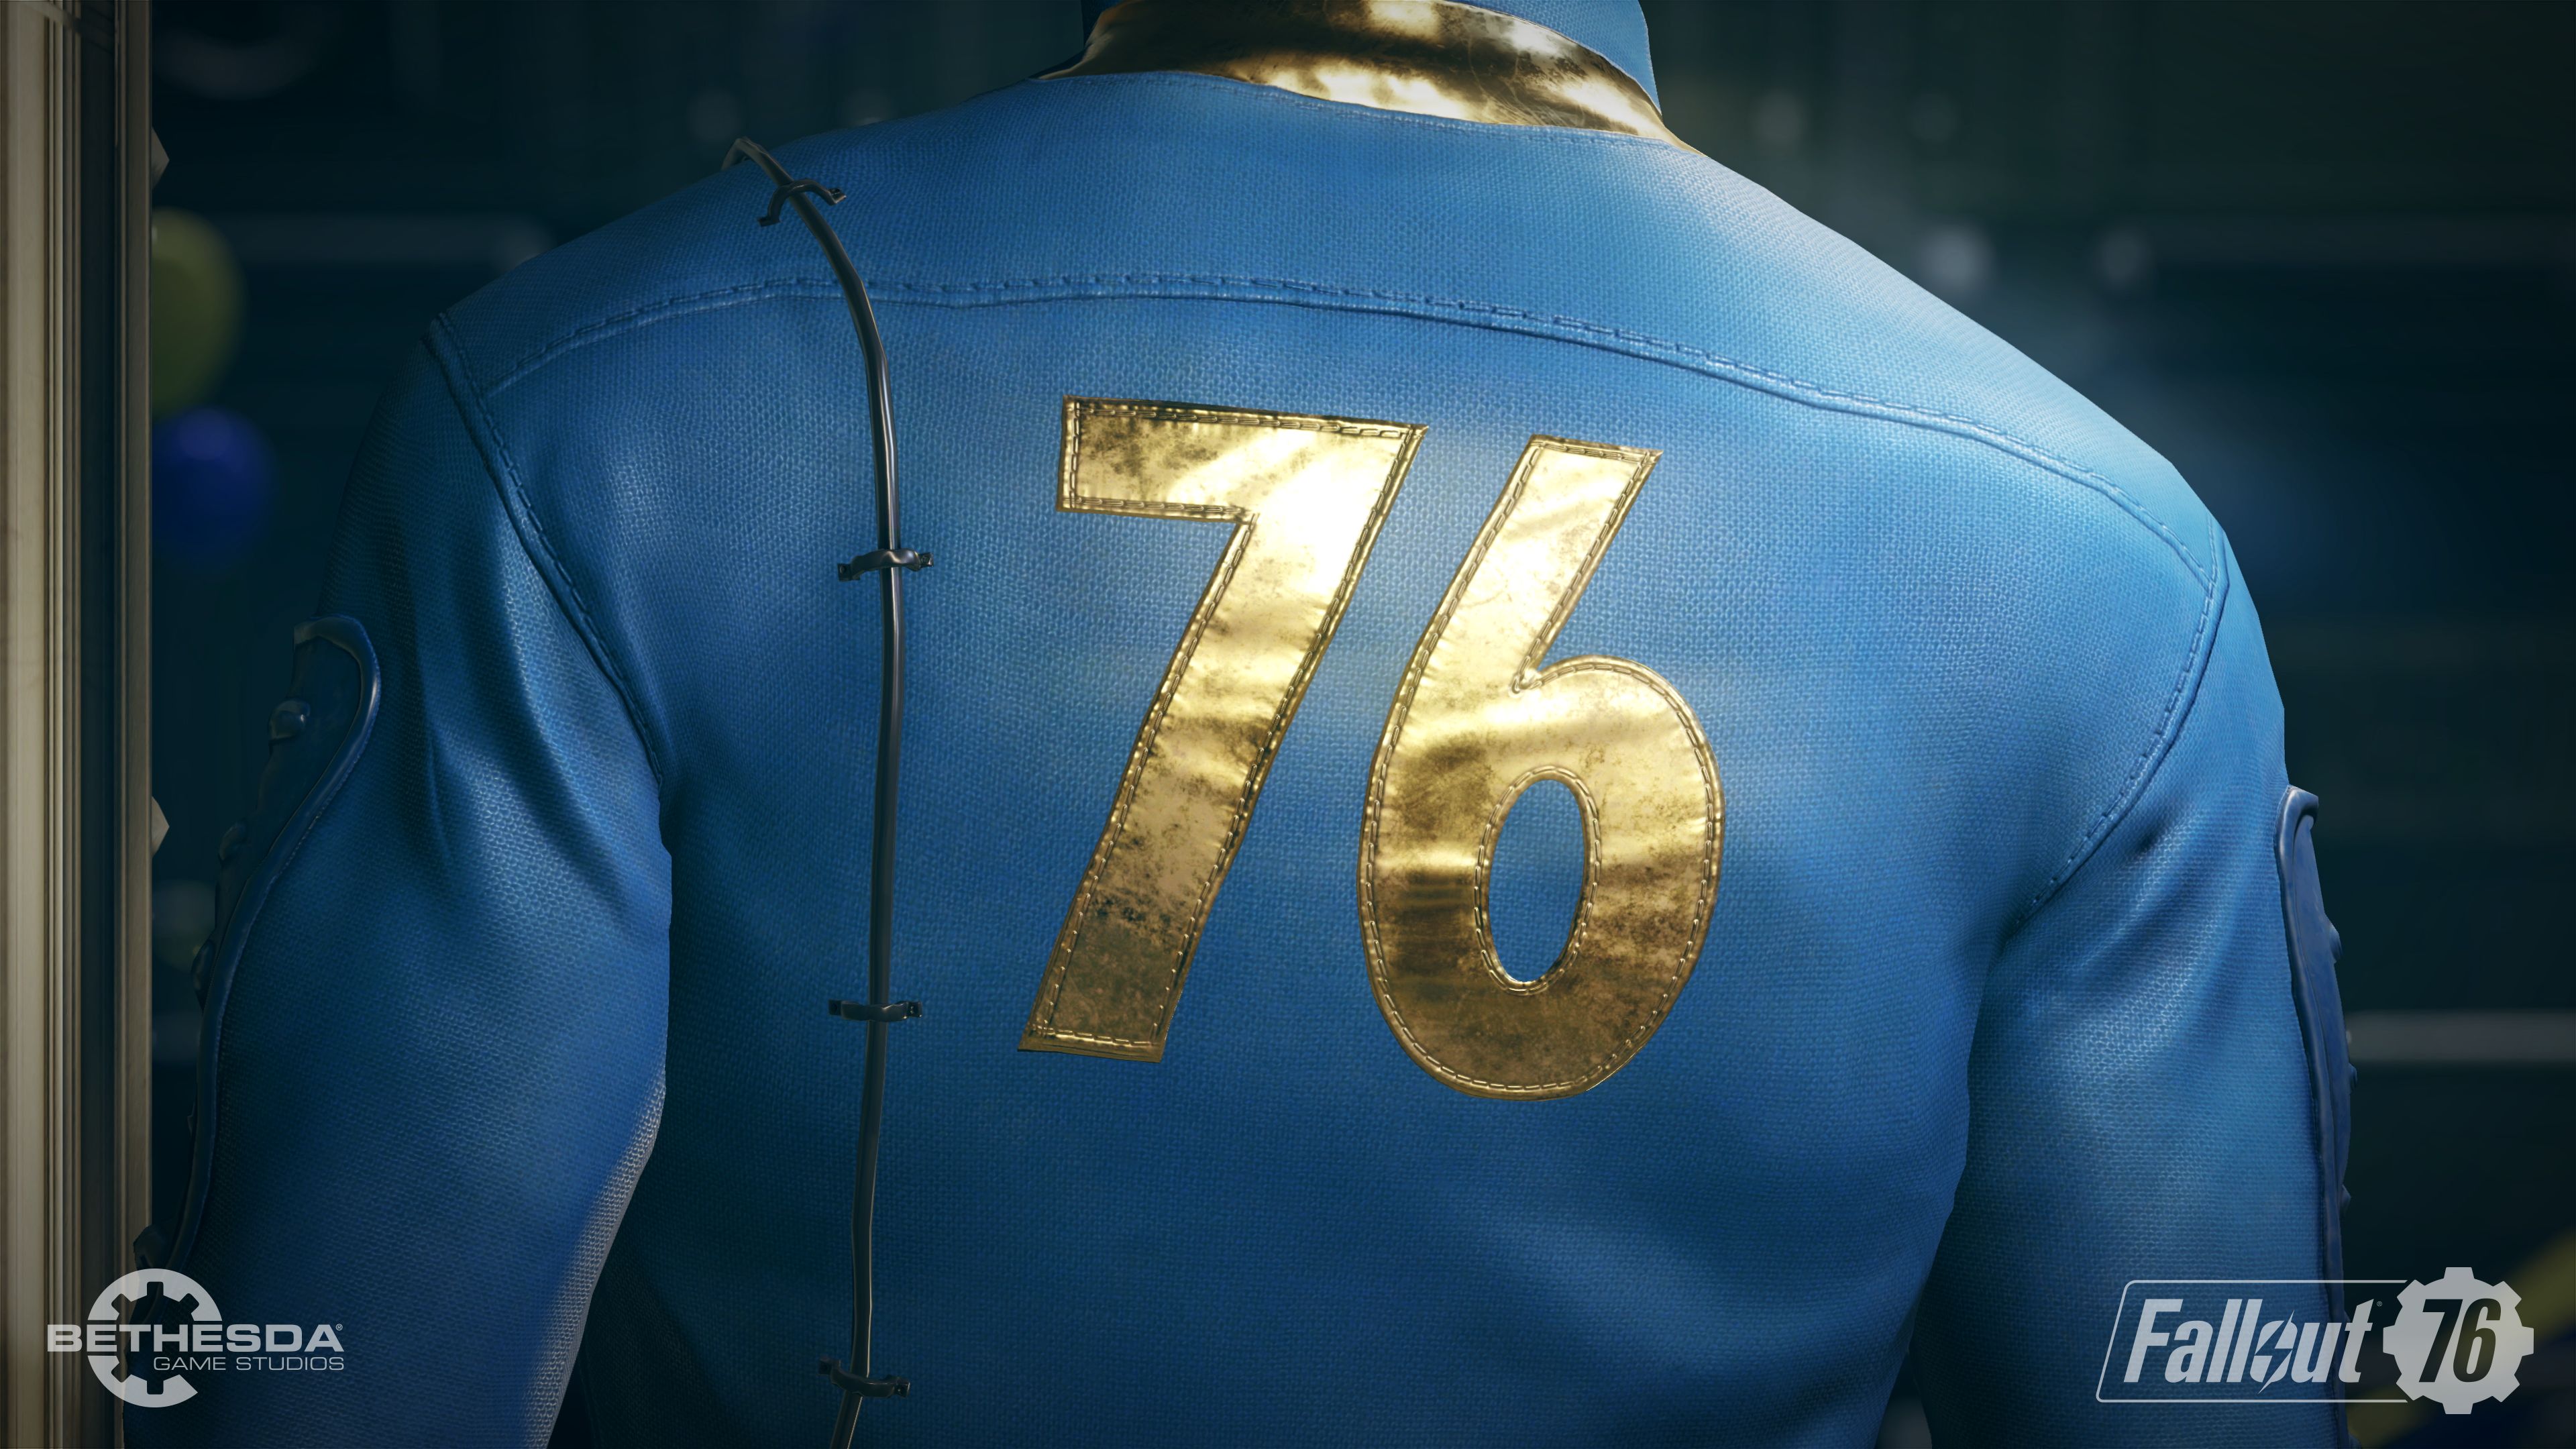 Detalles de Fallout 76 Power Armor Edition